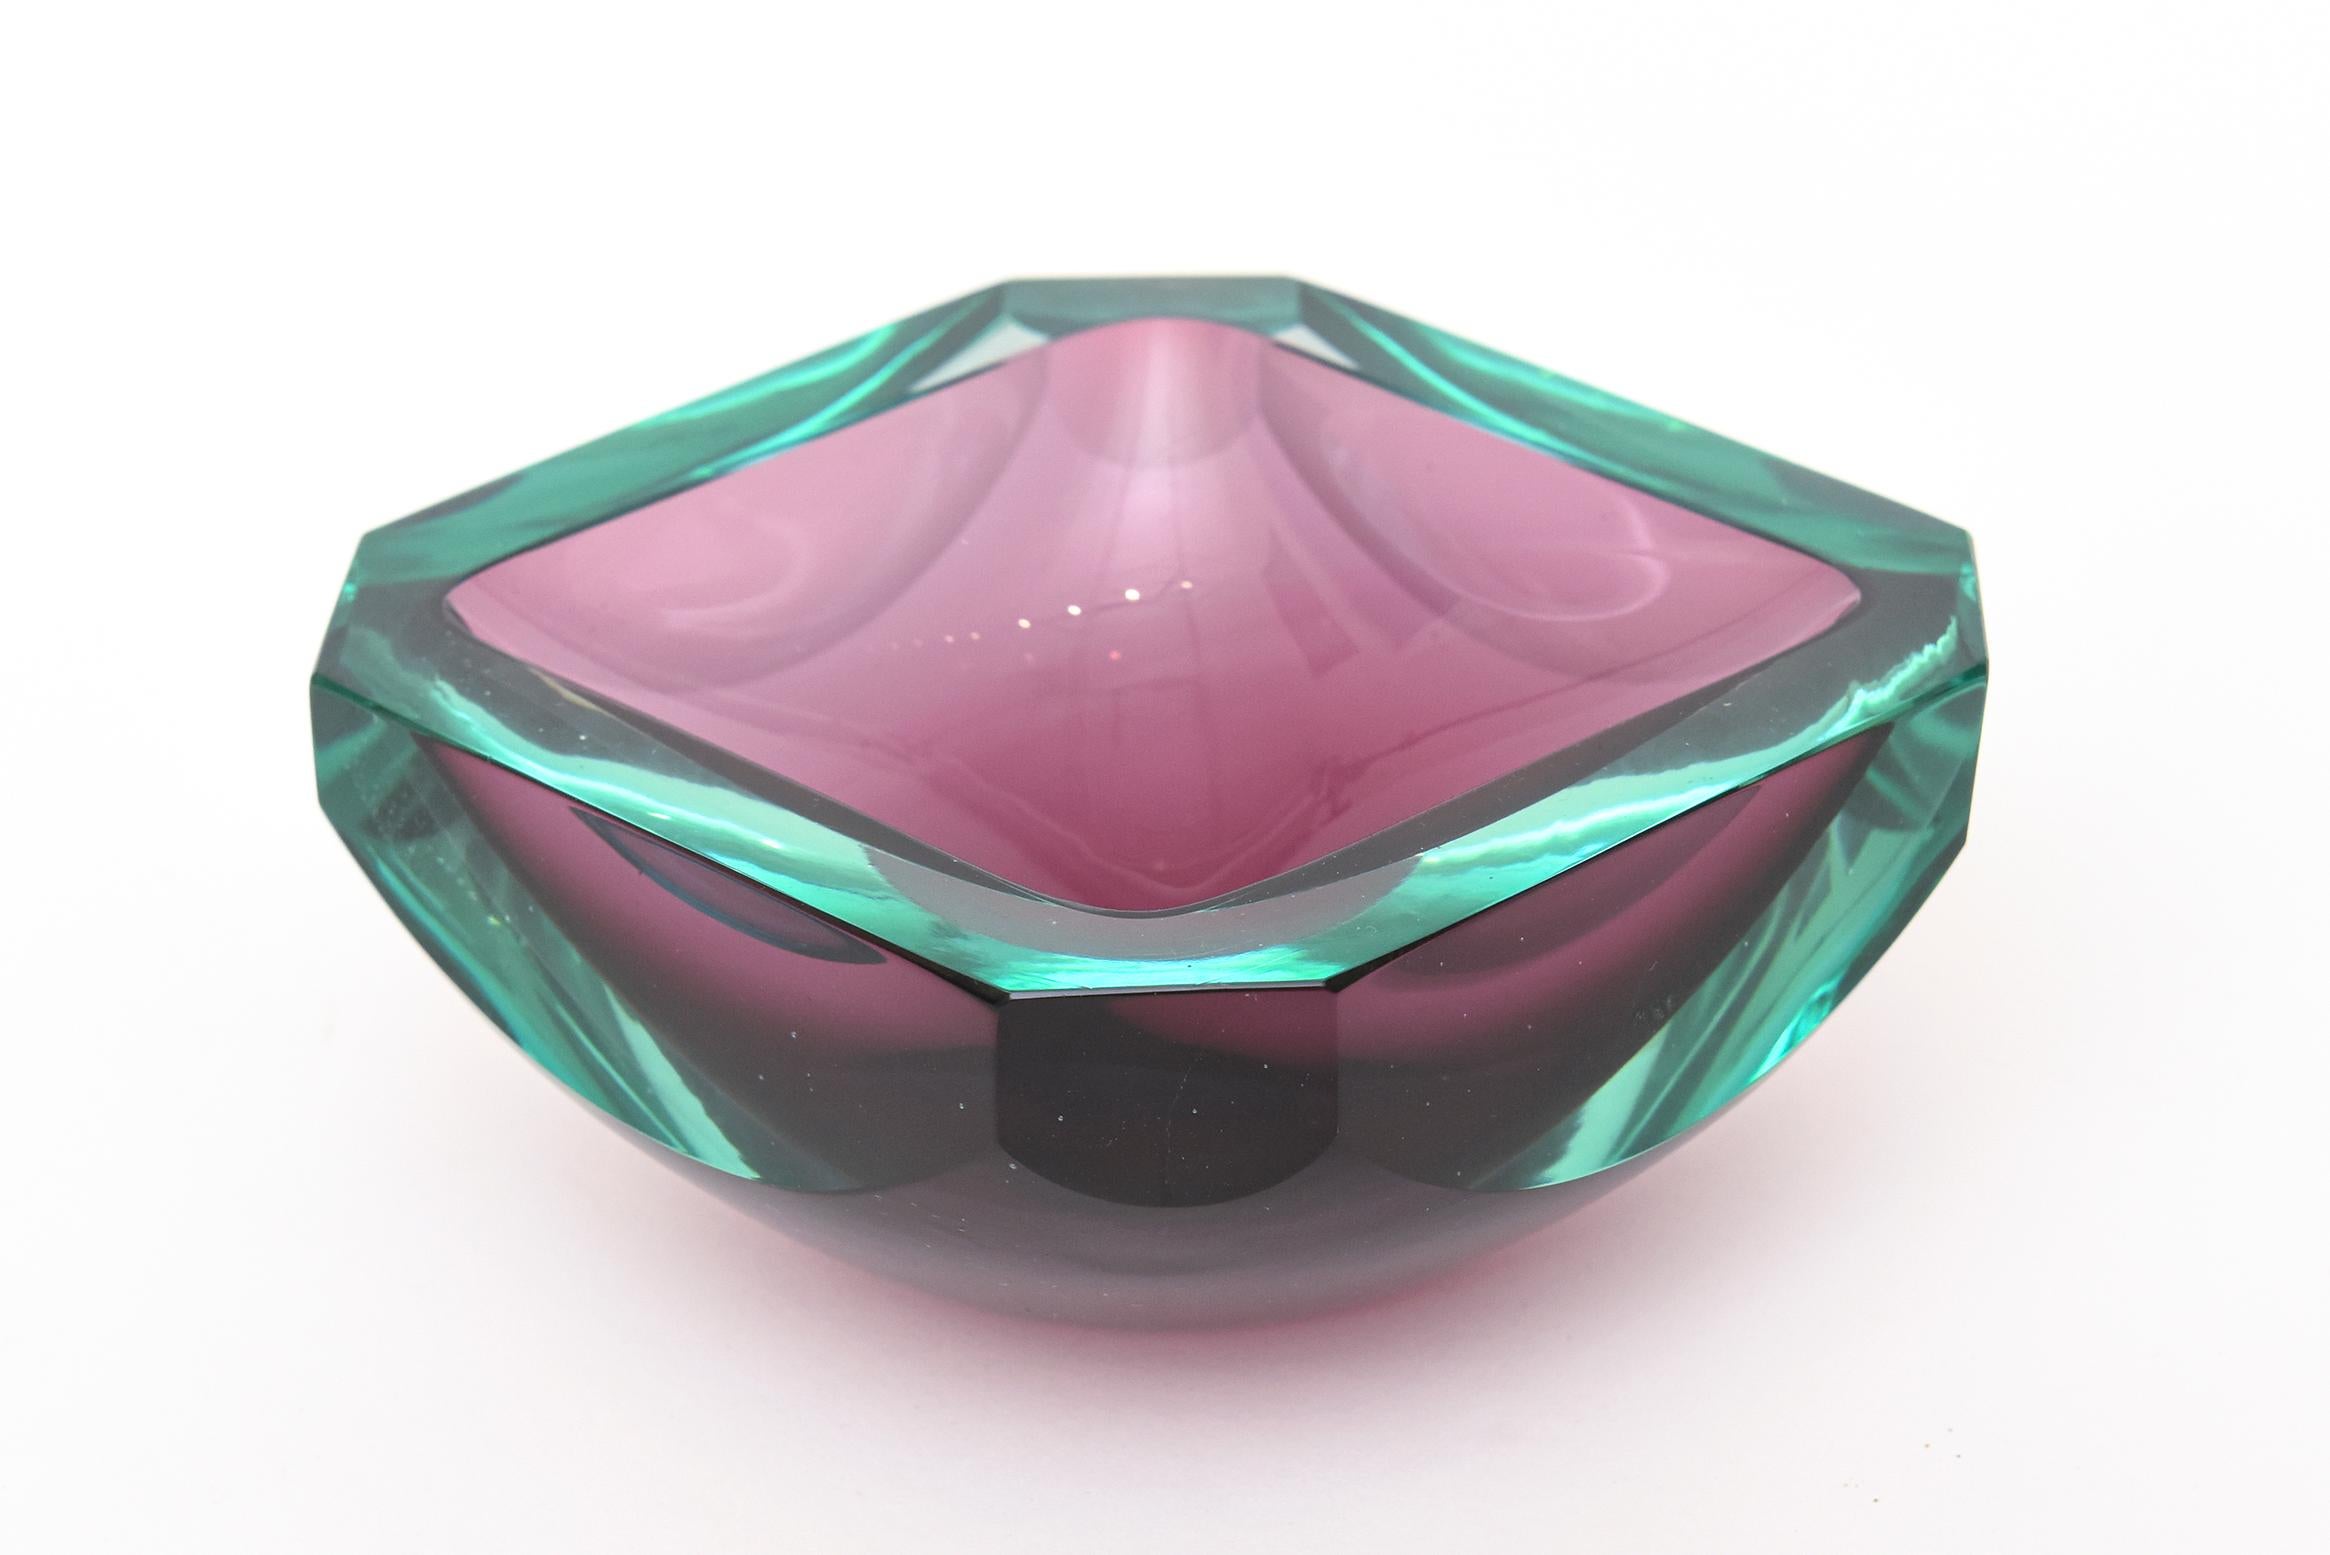 Diese quadratische Schale aus italienischem Murano-Glas mit Facettenschliff ist in kräftigen smaragdgrünen und violetten Farben gehalten. Die Seiten sind halbfacettiert und die 4 Ecken sind abgewinkelt. Es handelt sich um ein wunderschönes Objekt